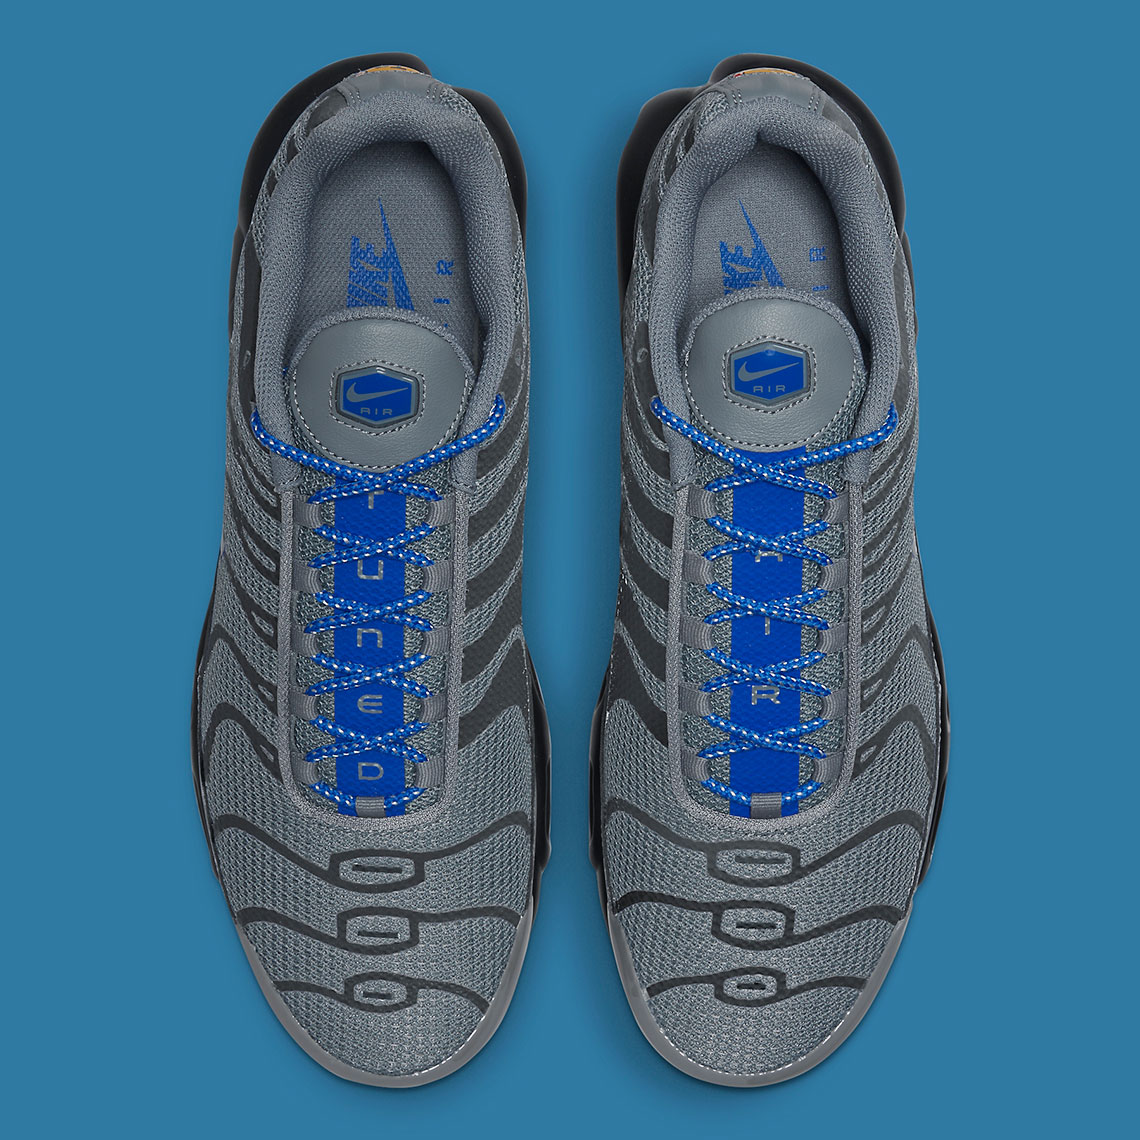 Nike Air Max Plus Reflective Grey Blue Dn7997 002 6